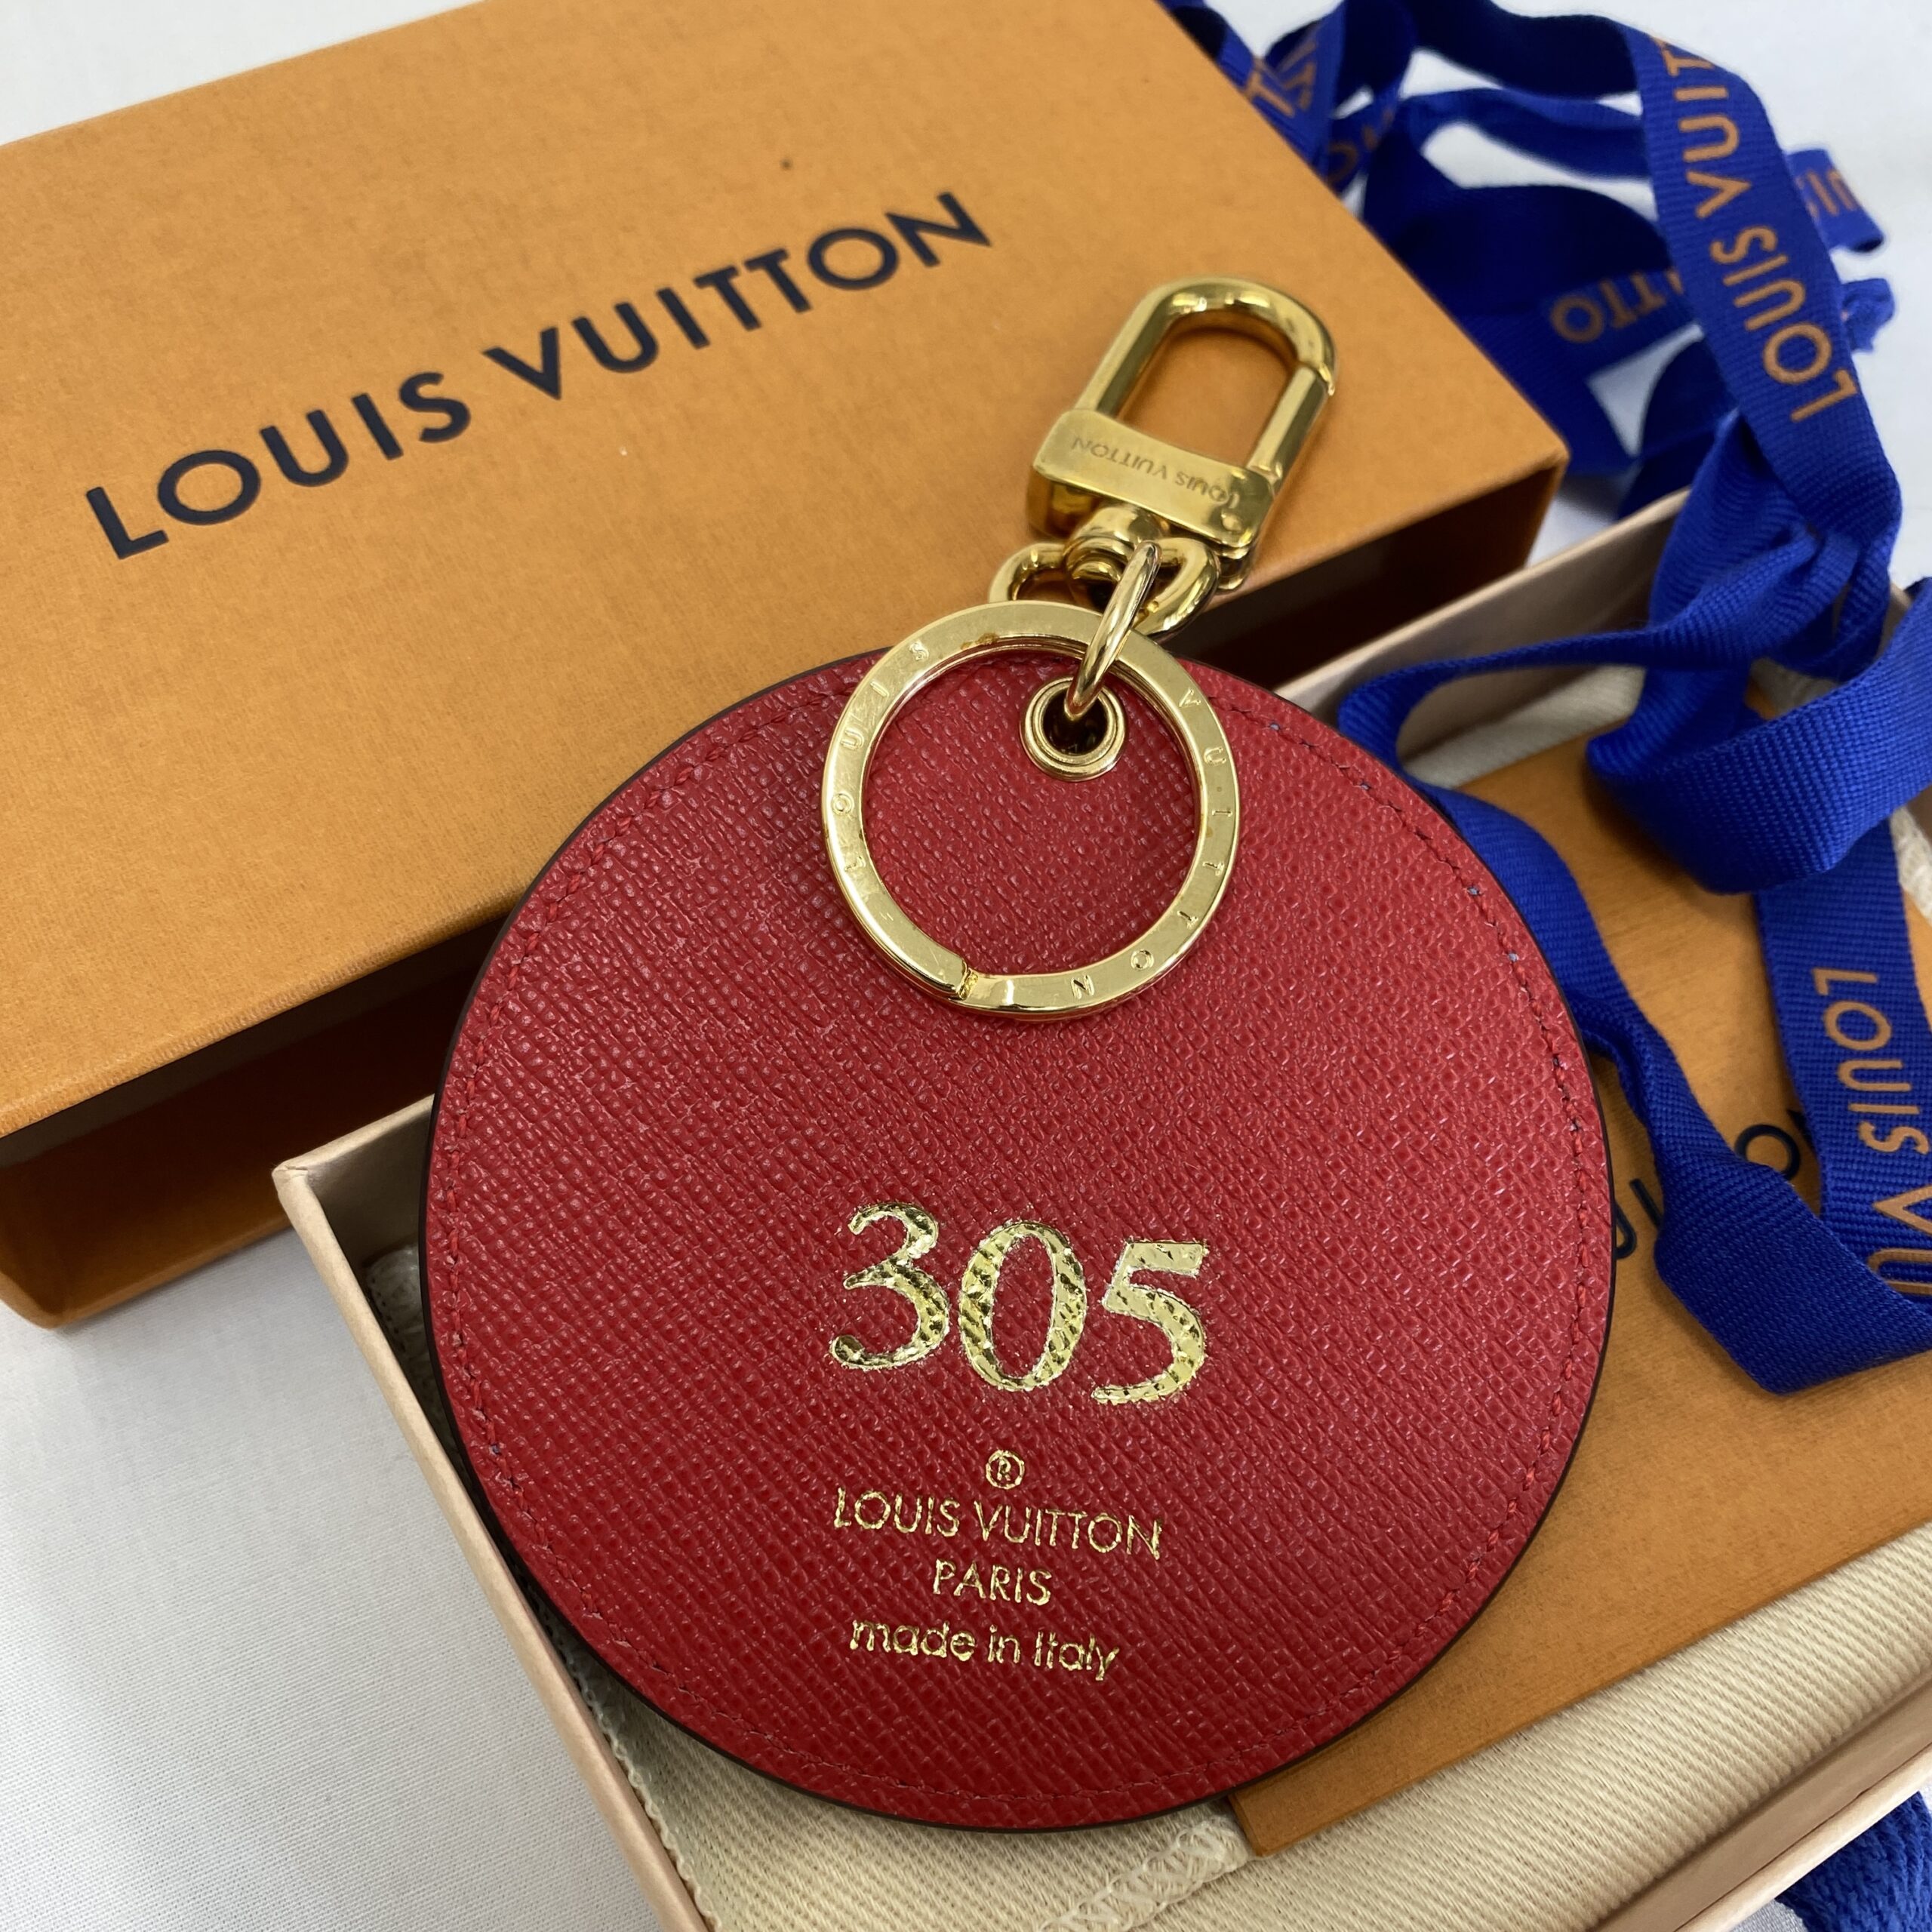 Agora você pode realizar o sonho da Louis Vuitton personalizada própria!